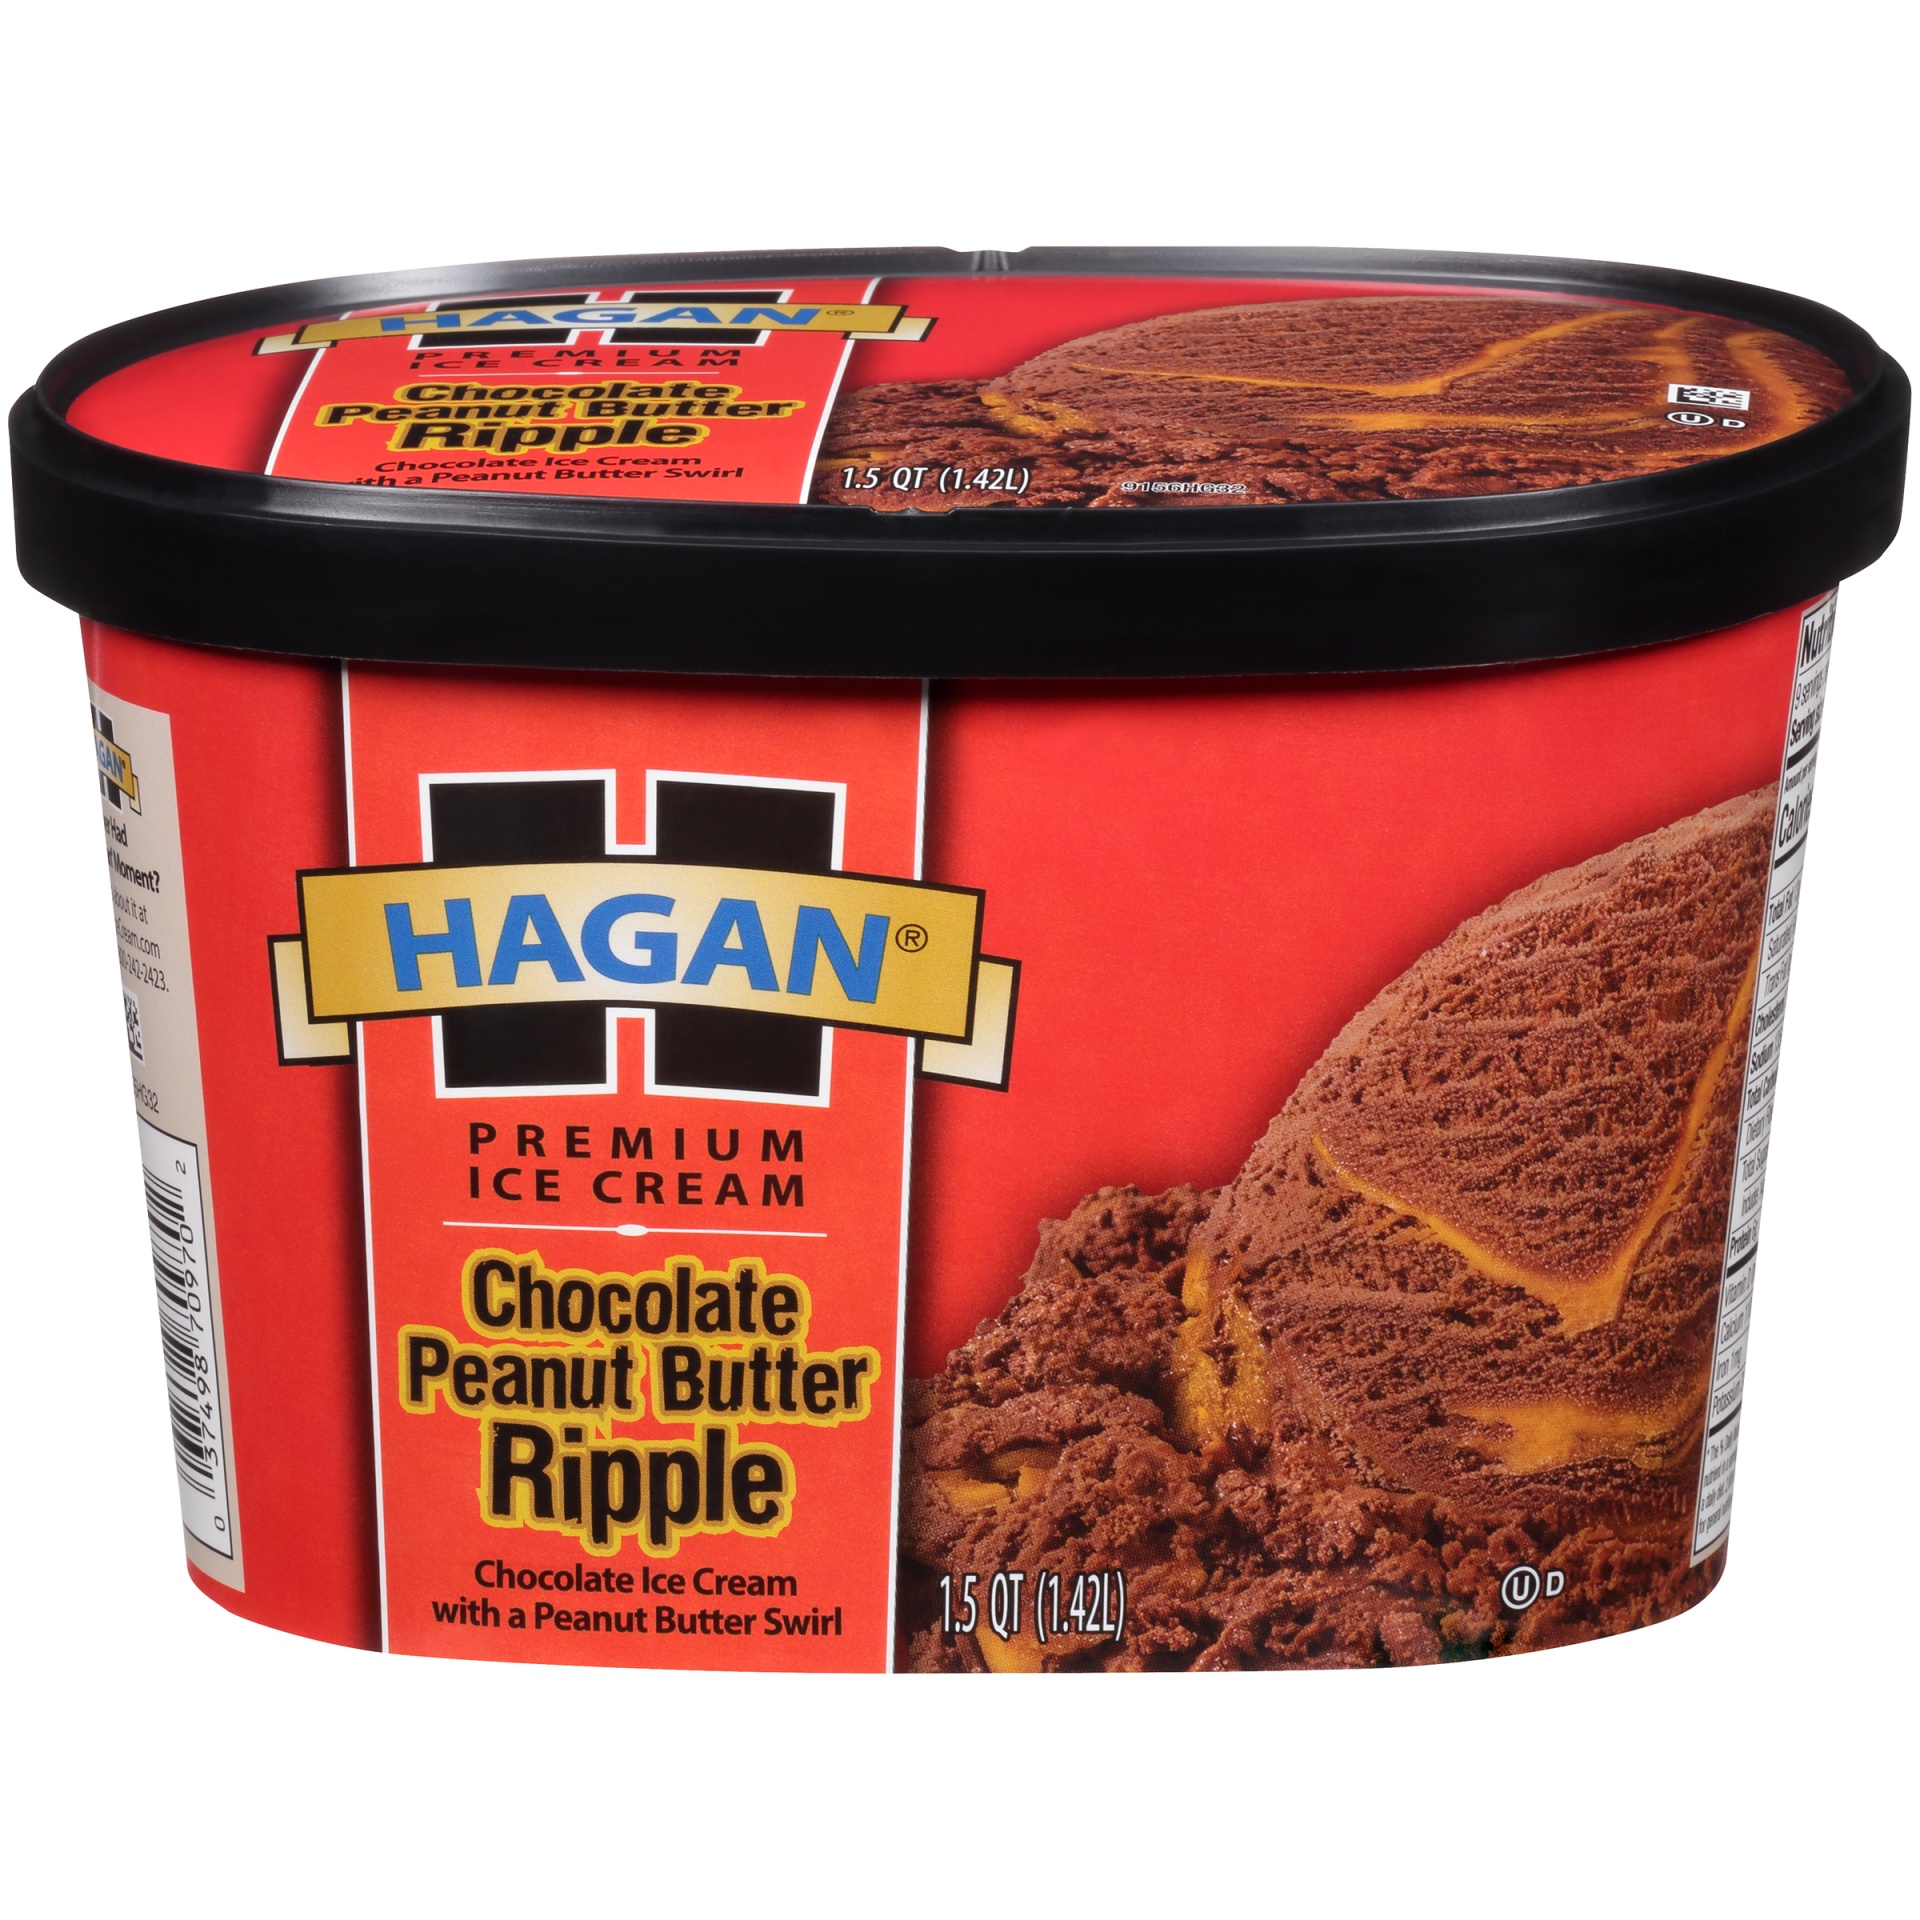 slide 1 of 7, Hagan Chocolate Peanut Butter Ripple Premium Ice Cream, 1.5 qt